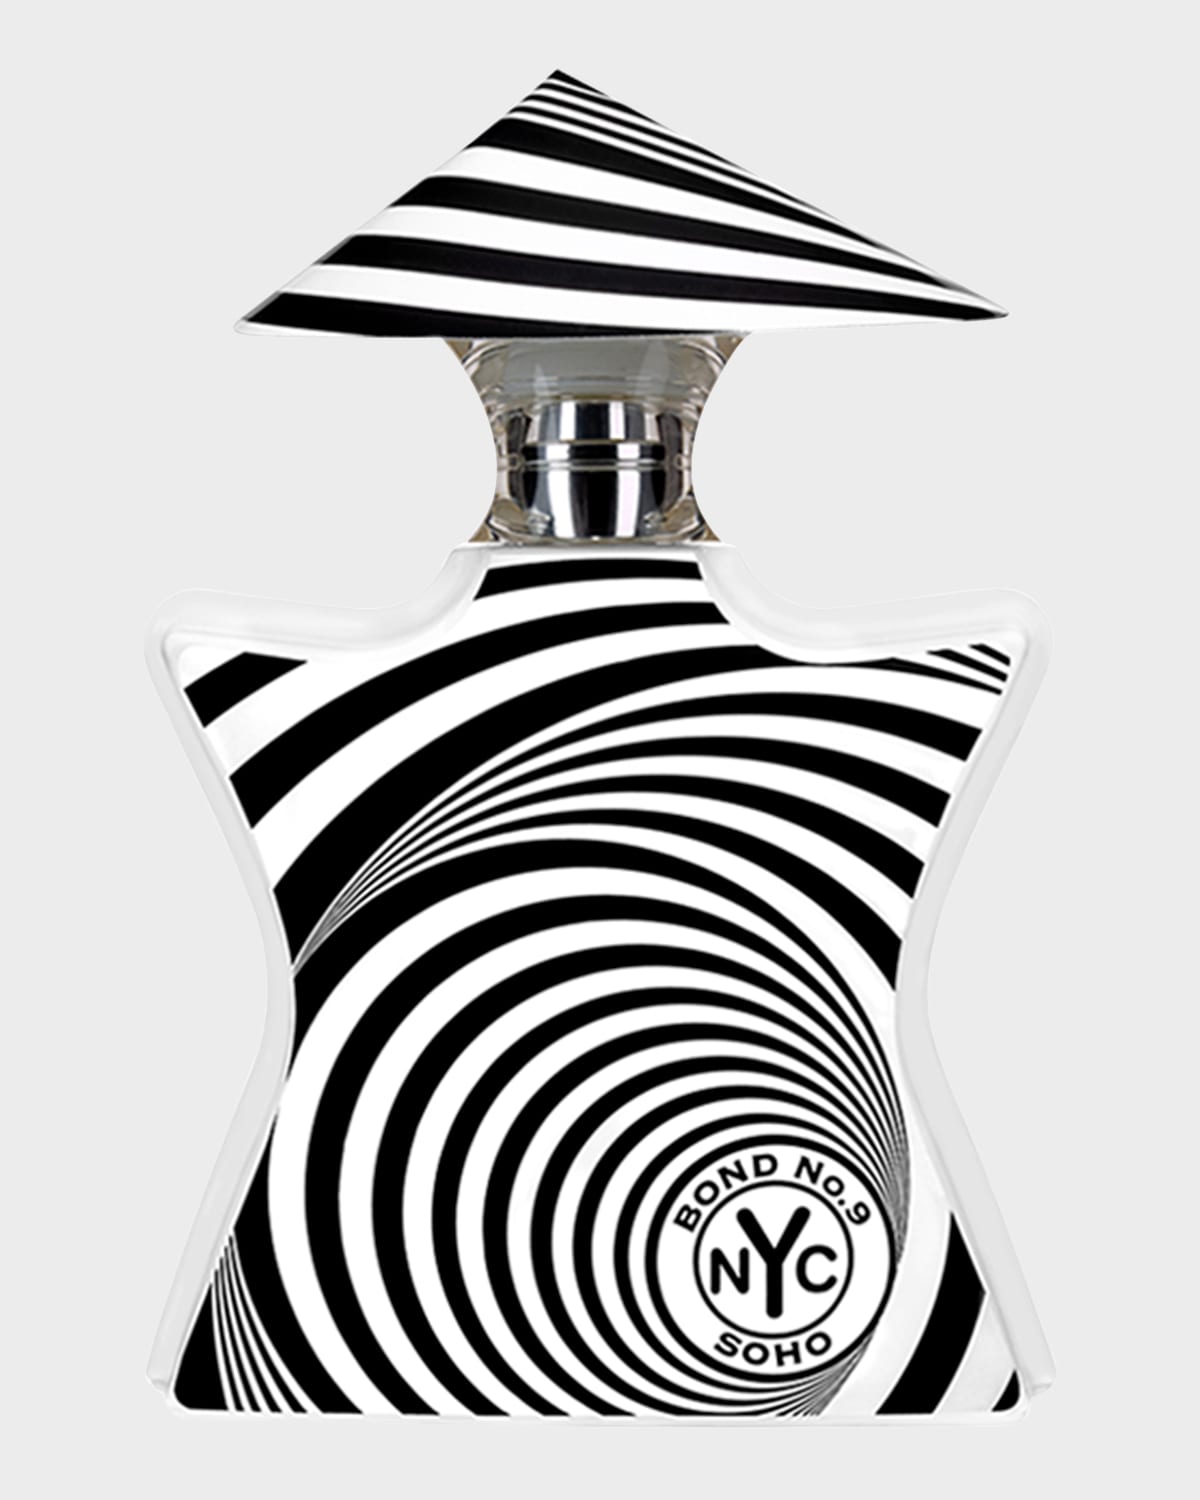 Bond No.9 New York Soho Eau de Parfum, 1.7 oz.